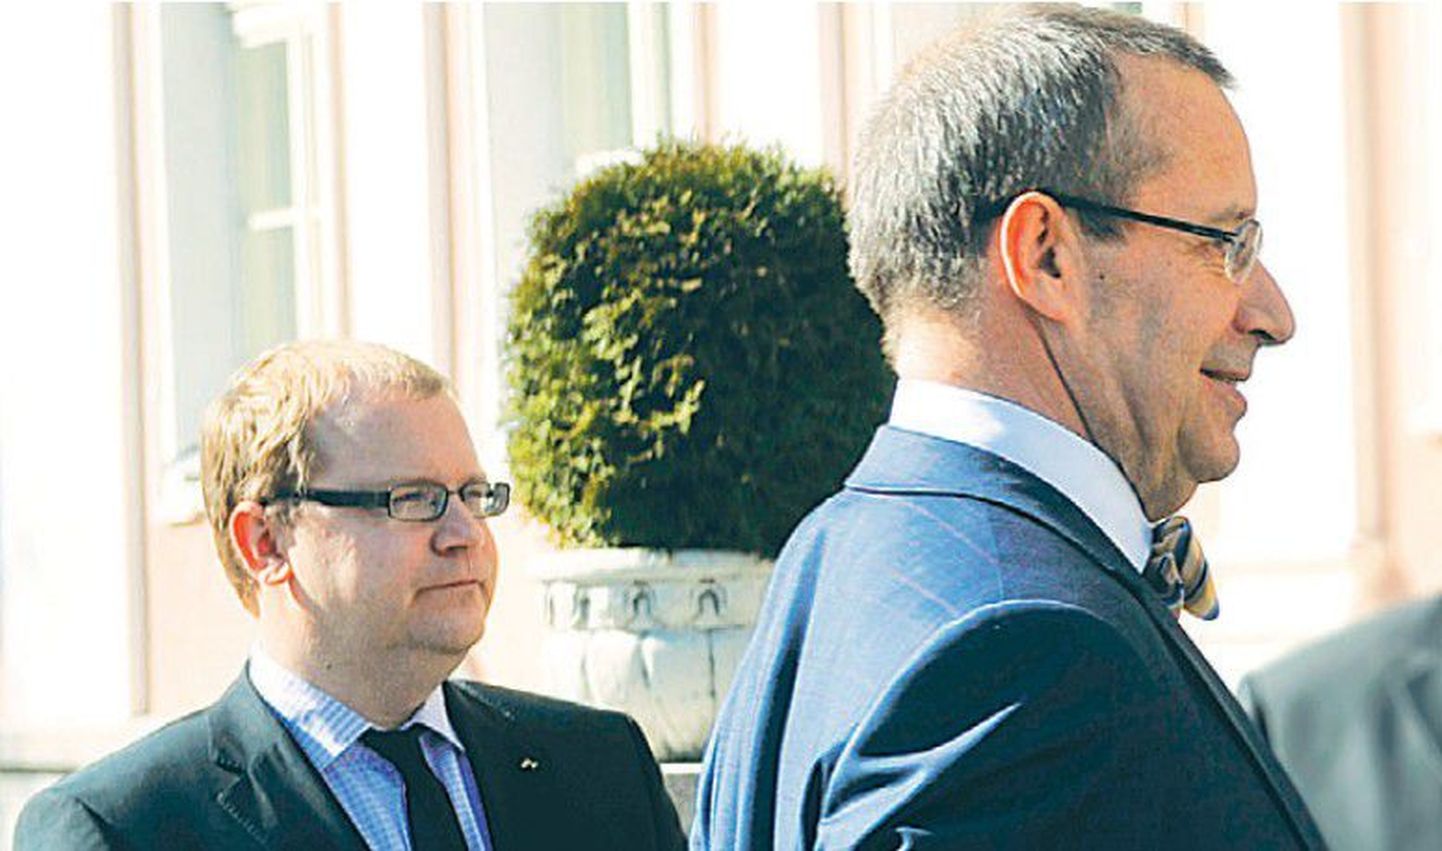 Välisminister Urmas Paet ei soovi avaldada, mida ta arvab presidendi ideest tuua välisteenistusse uut verd.